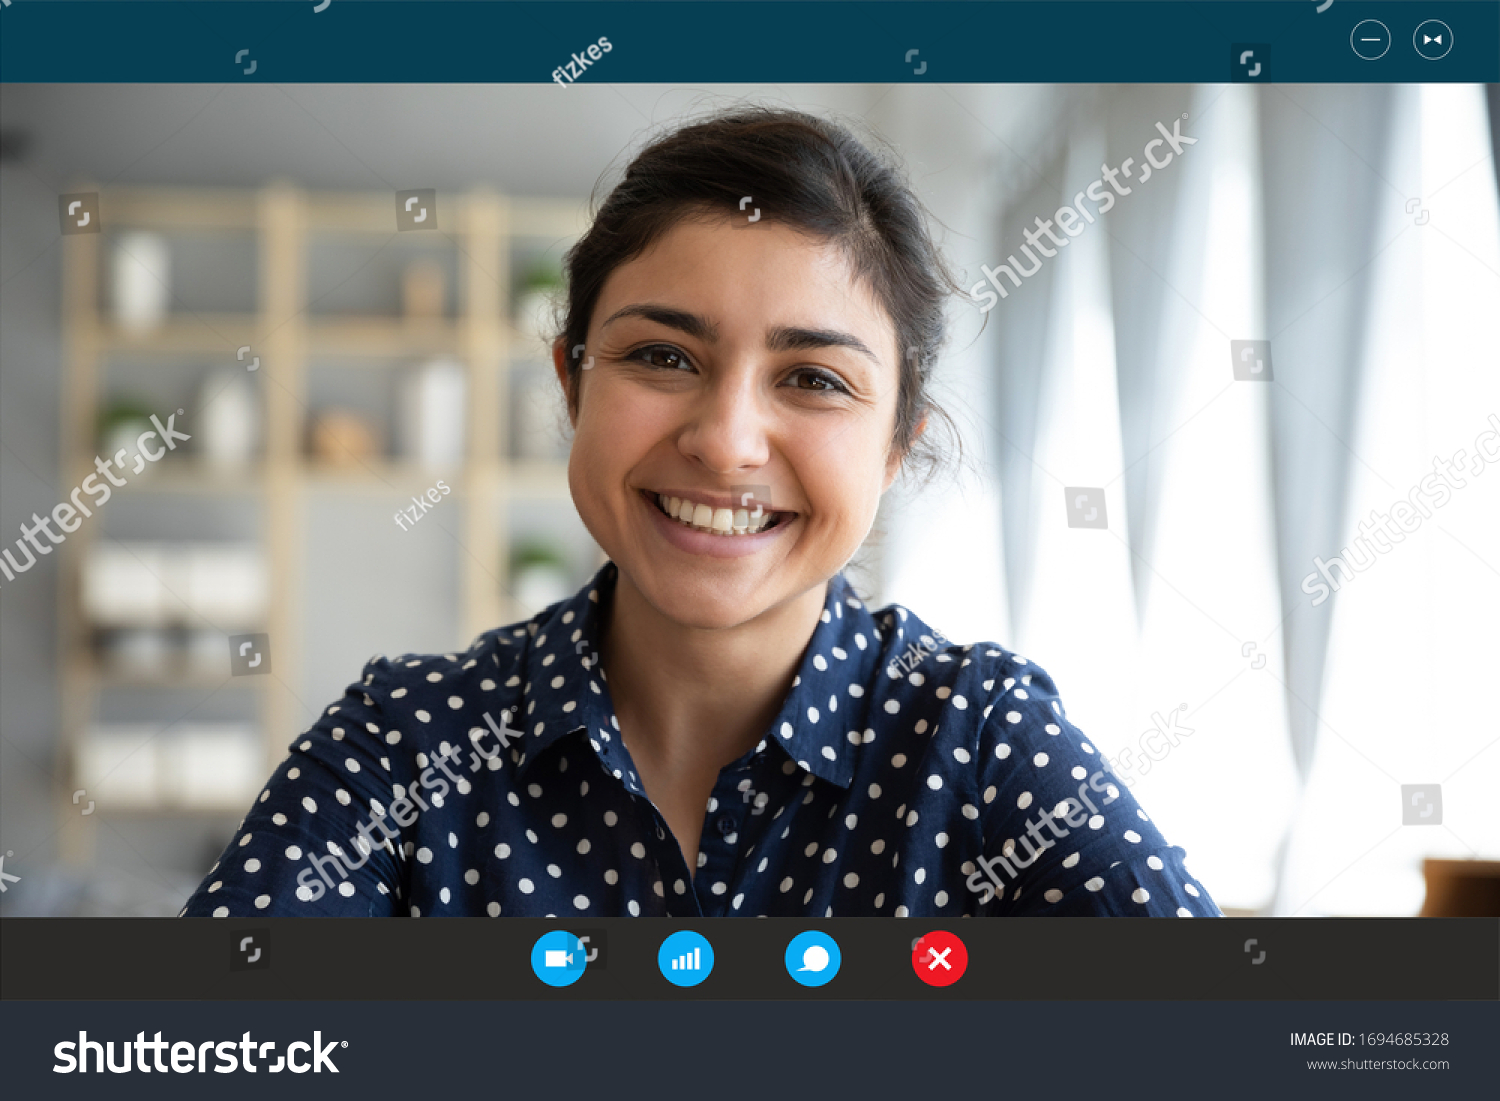 indian girl webcam live